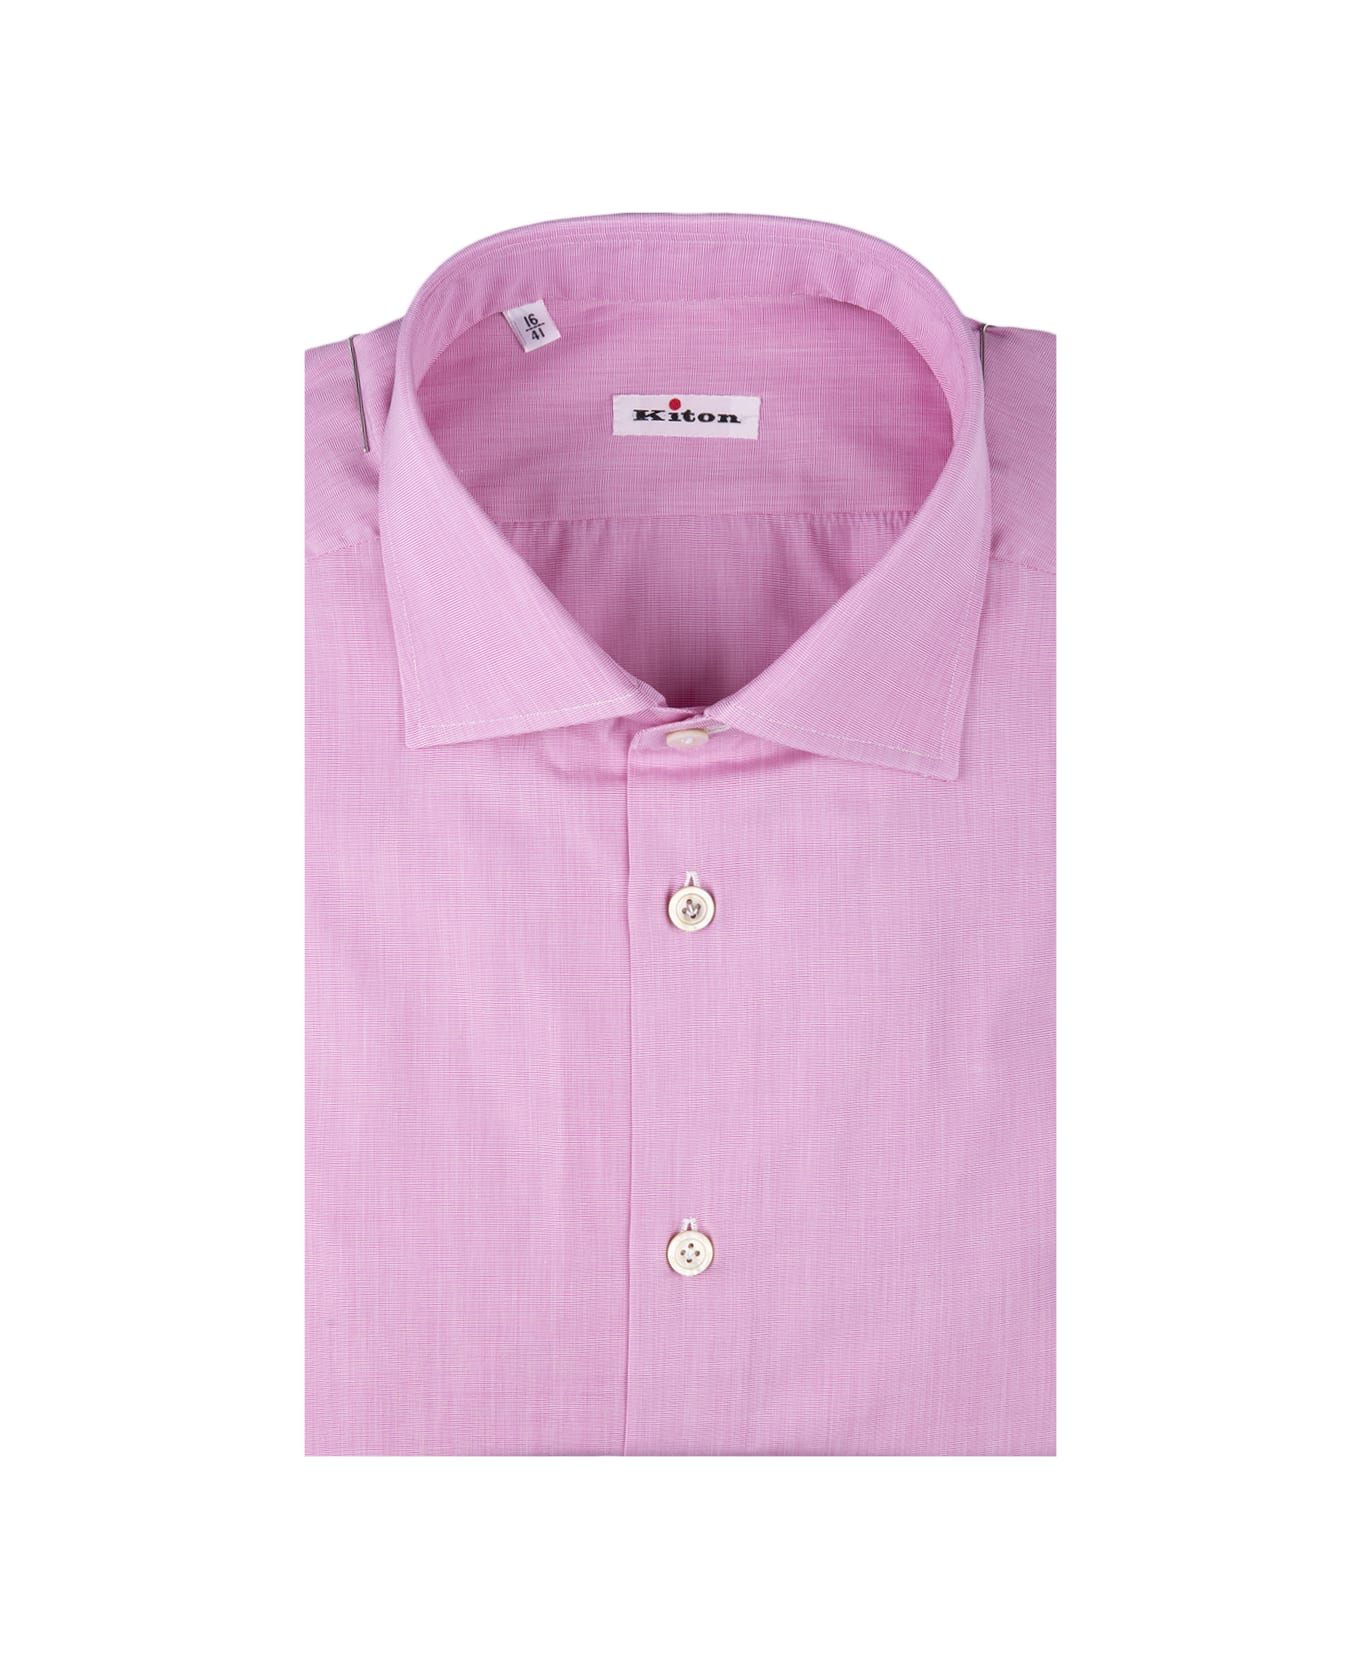 Kiton Pink Poplin Shirt - Pink